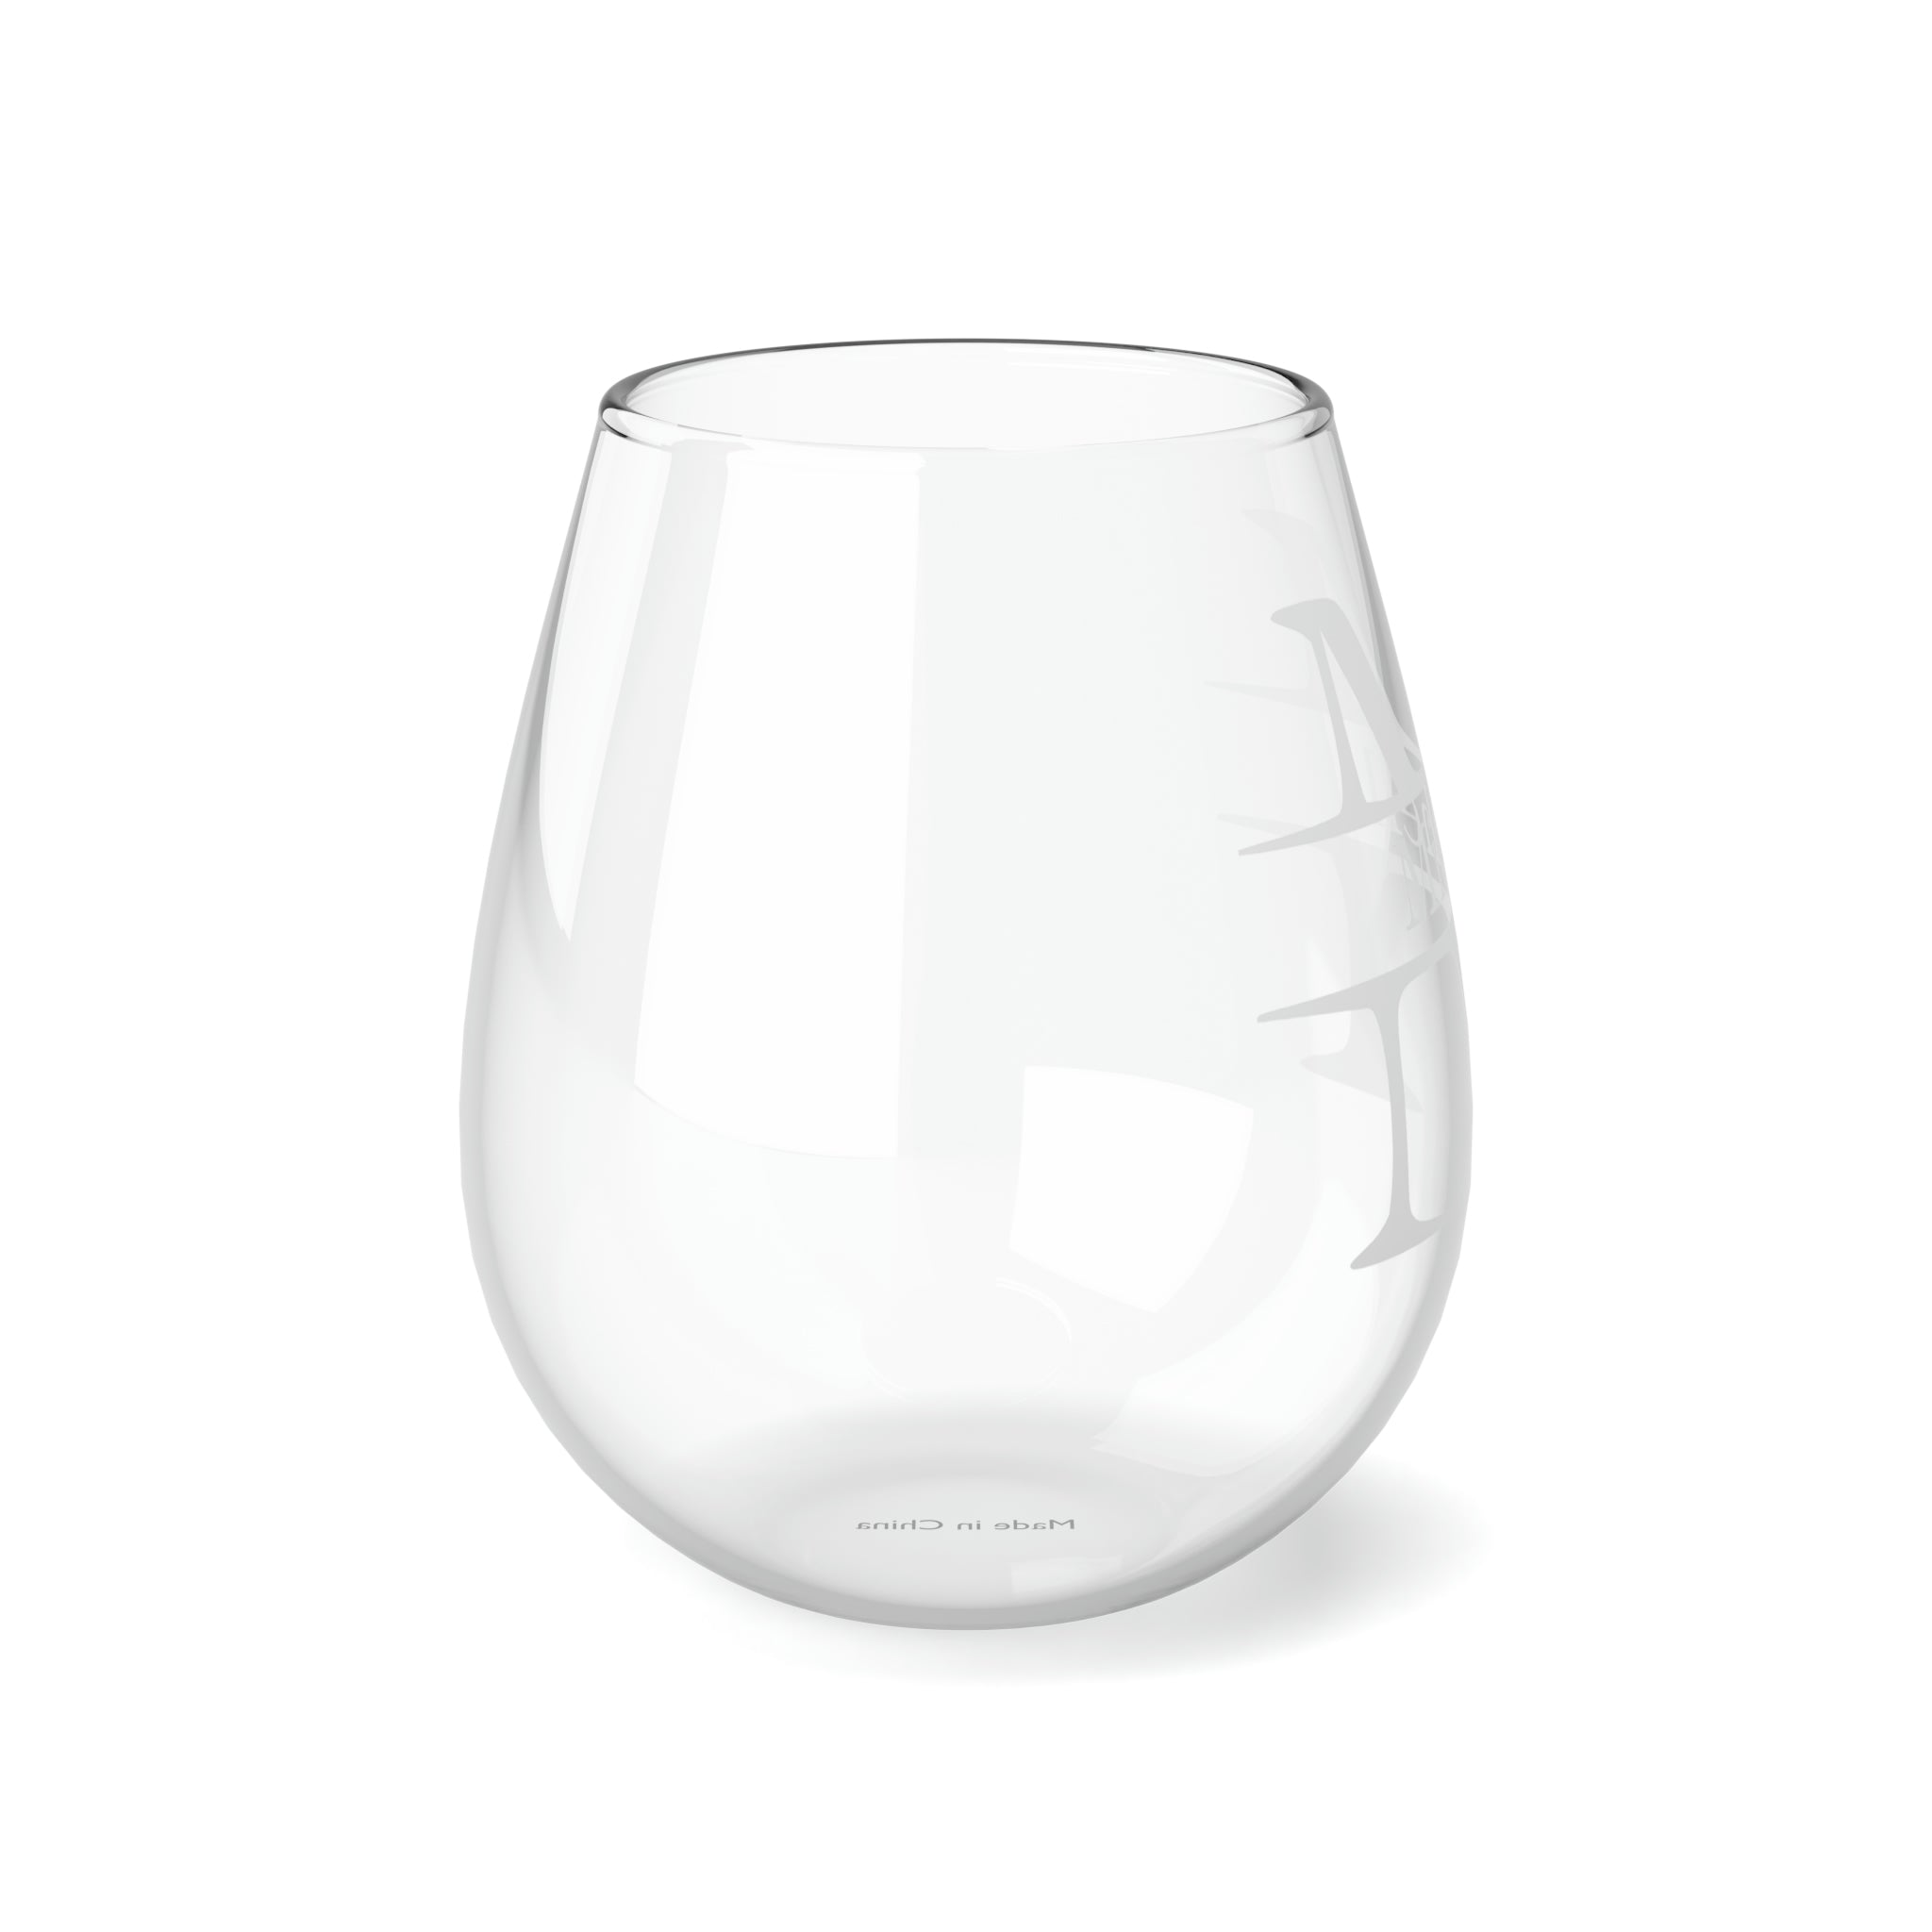 Merlot, Personalized - Stemless Wine Glass, 11.75oz